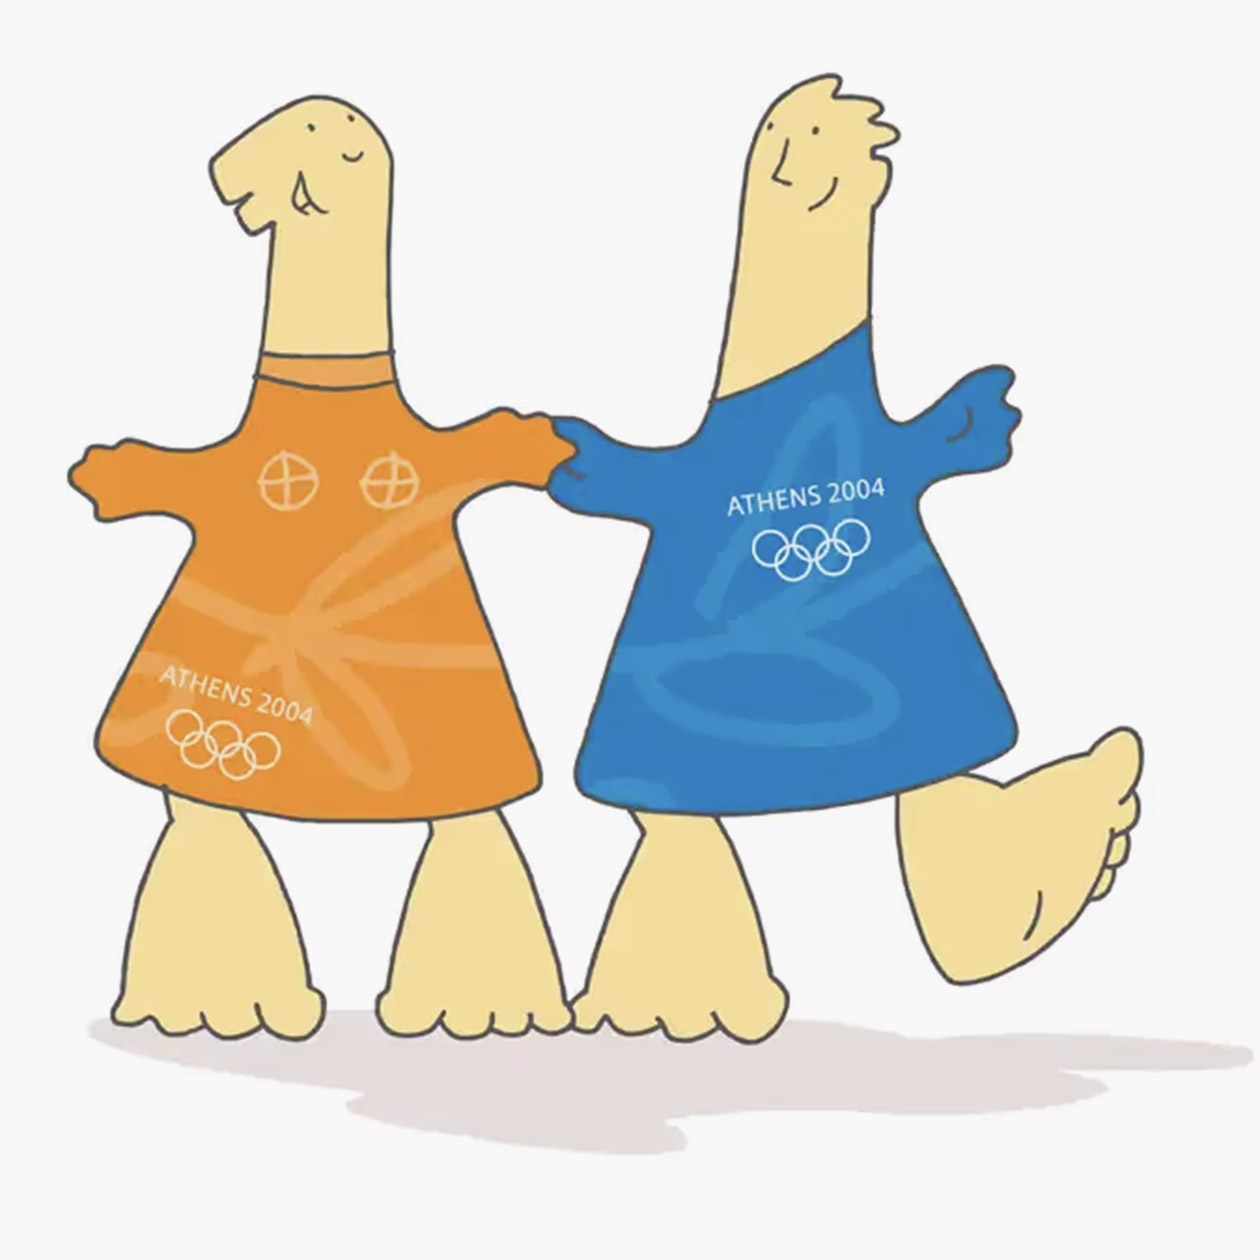 Феб и Афина — редкий пример, когда в качестве олимпийского талисмана изображали людей. Пусть на настоящих они и не очень похожи. Источник: olympics.com